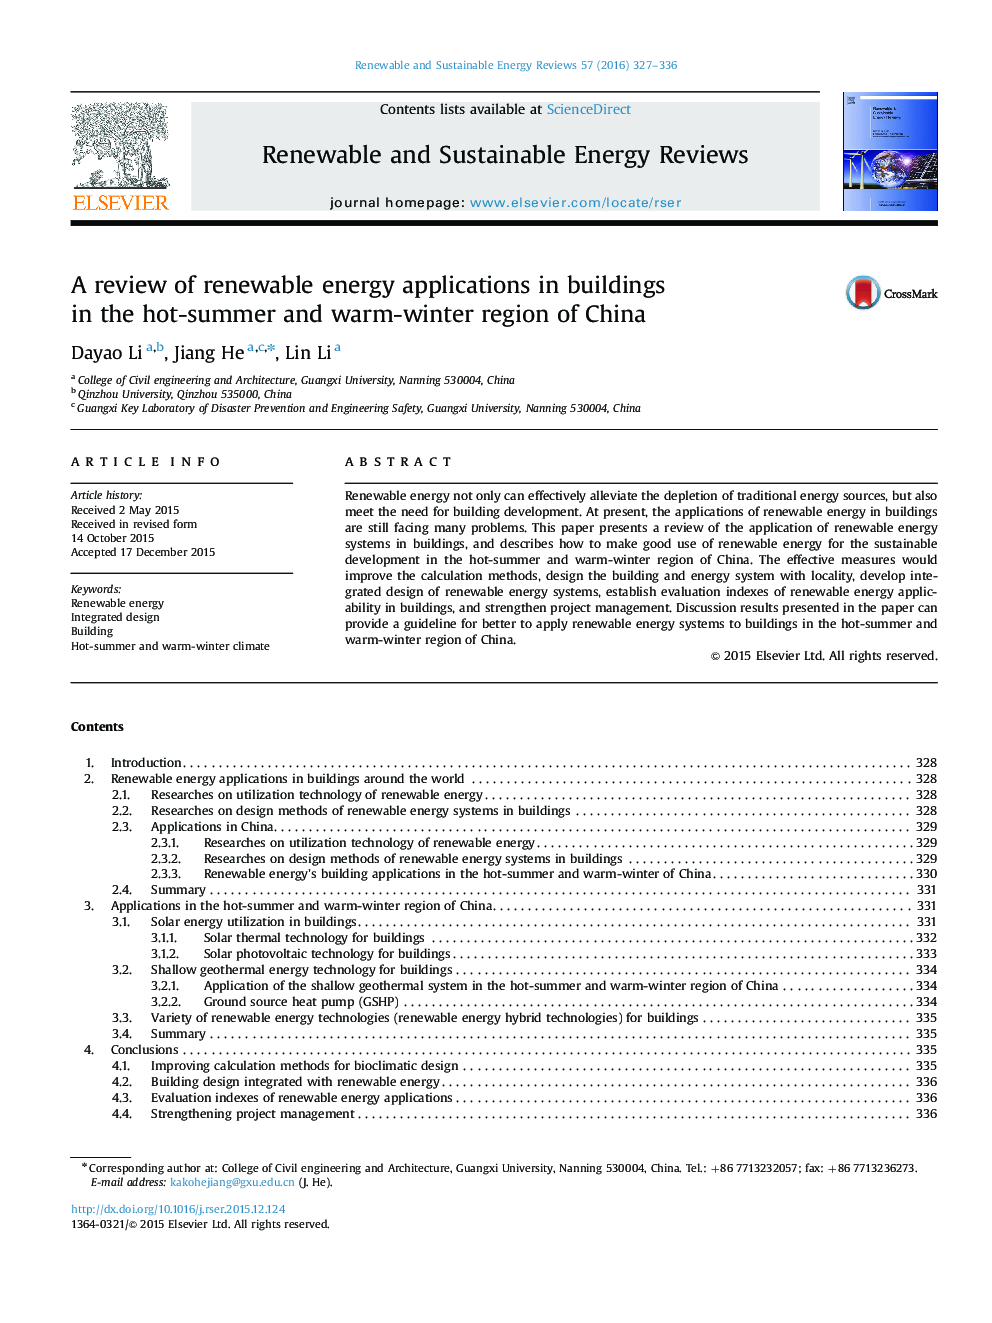 بررسی کاربرد انرژی های تجدید پذیر در ساختمان های منطقه گرم تابستان و گرم زمستان چین 